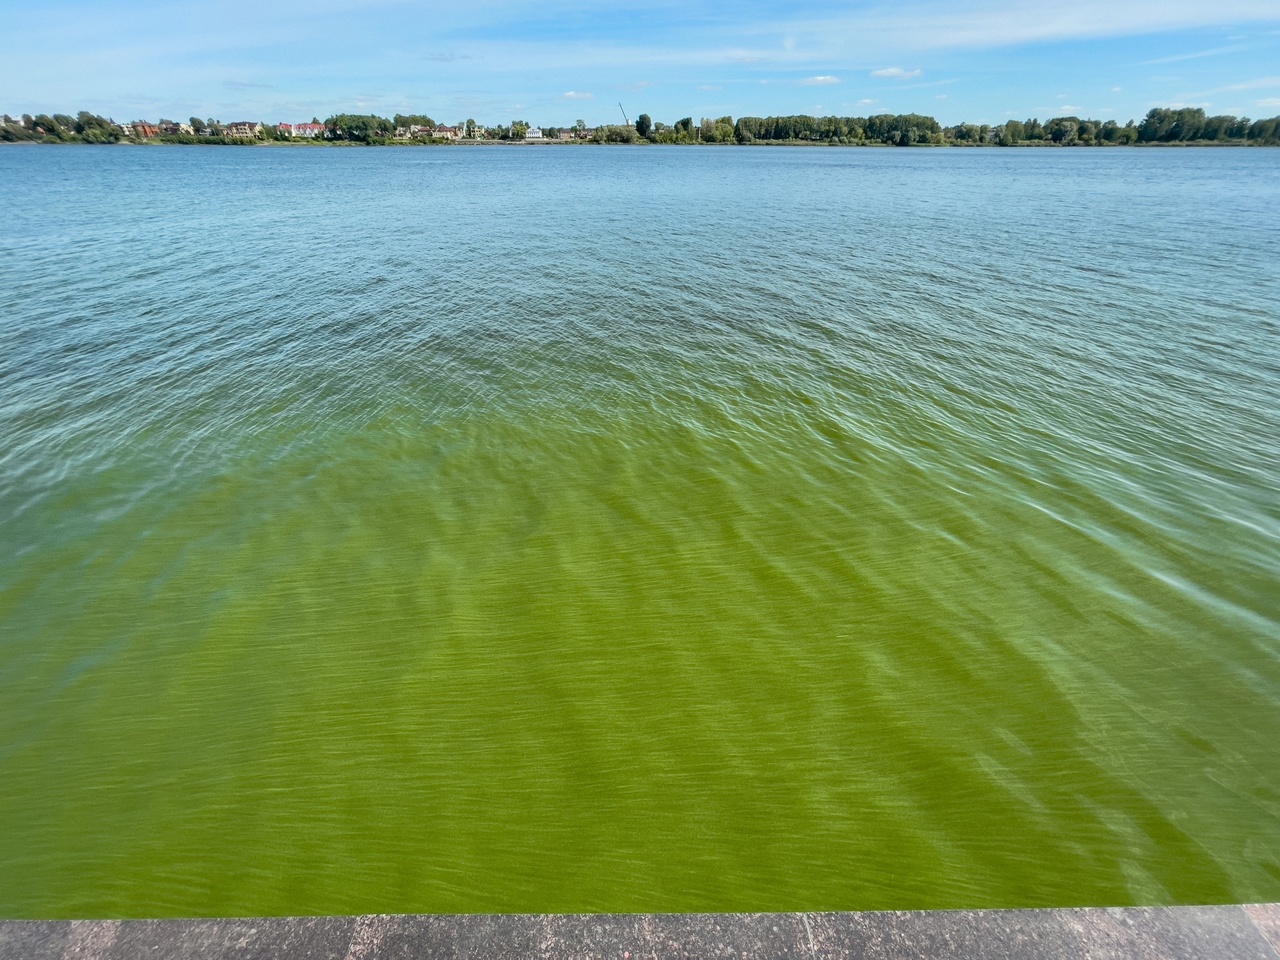 Бить тревогу или подождать пока пройдет : в центре Ярославля Волга окрасилась в зеленый цвет